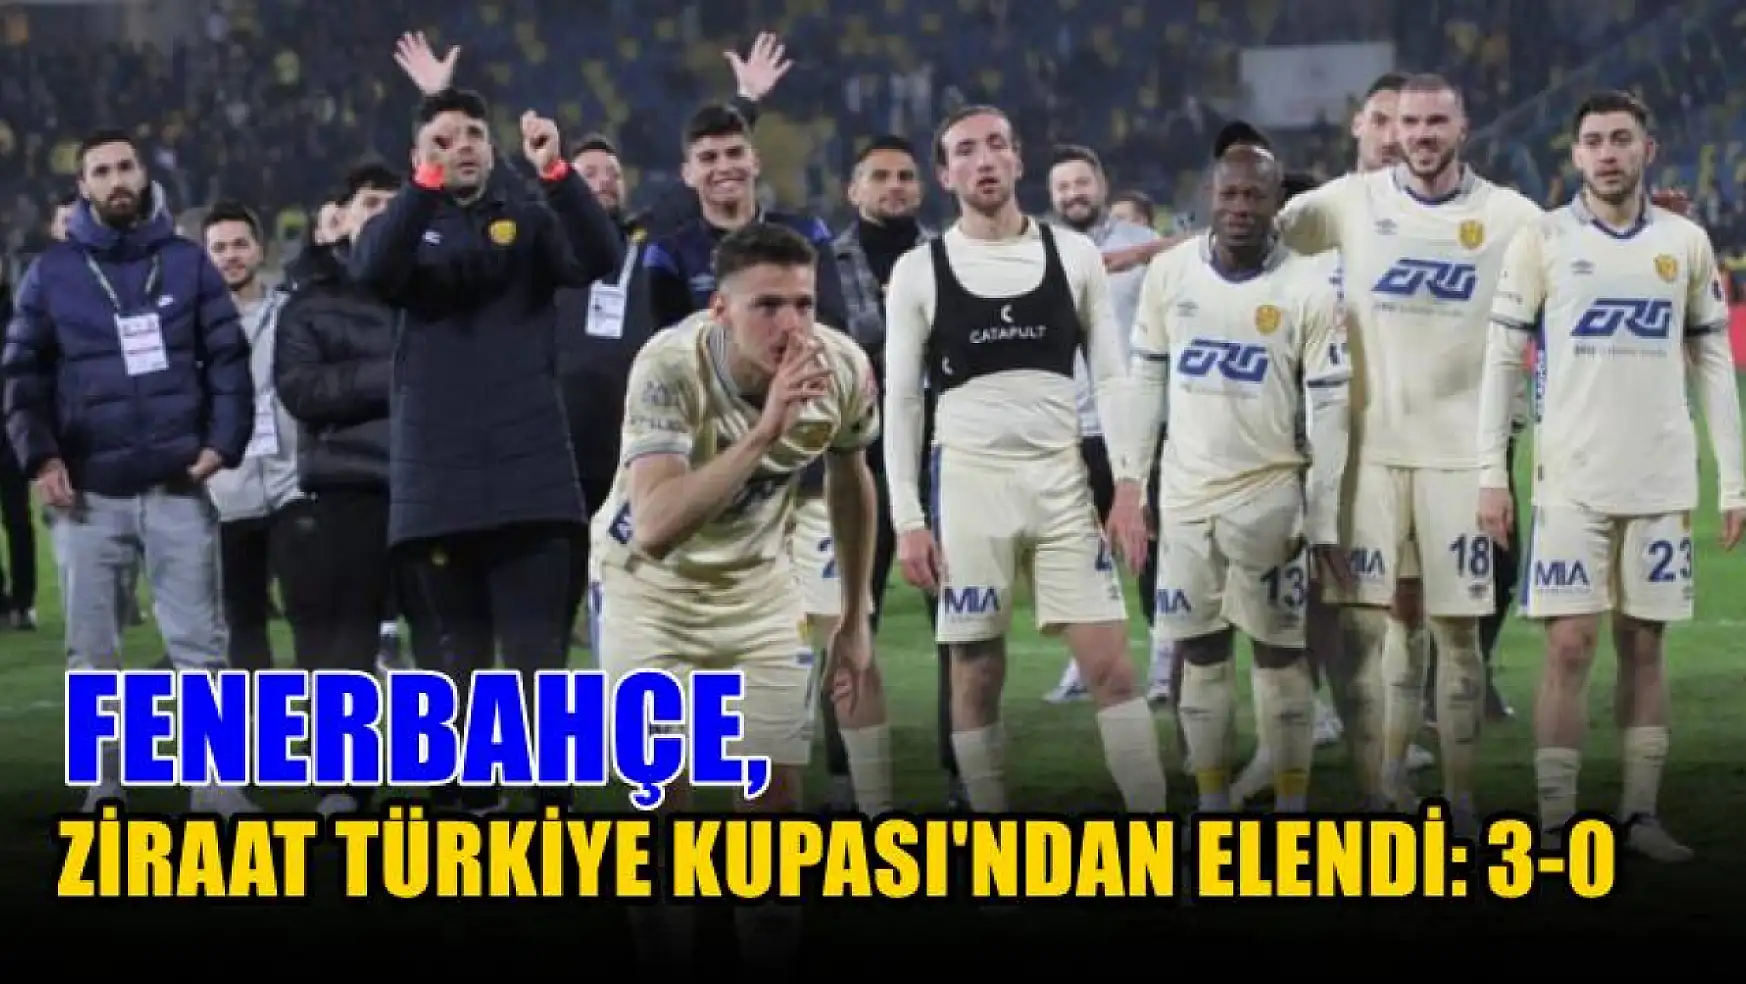 Fenerbahçe, Ziraat Türkiye Kupası'ndan elendi: 3-0